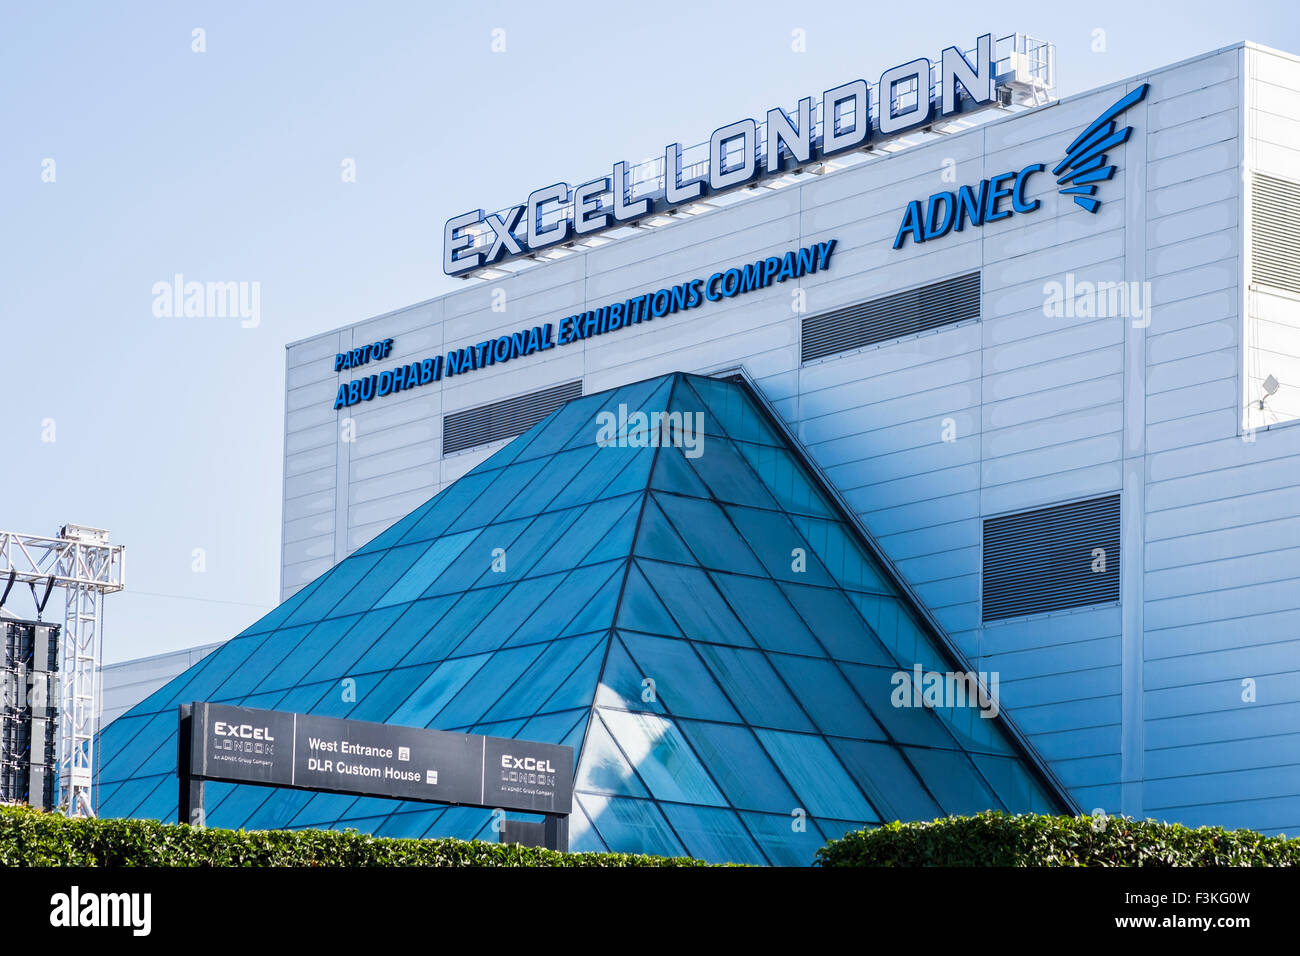 Excel Exhibition Centre de Londres sur le Royal Victoria Dock, Docklands, Londres, Angleterre, Royaume-Uni Banque D'Images